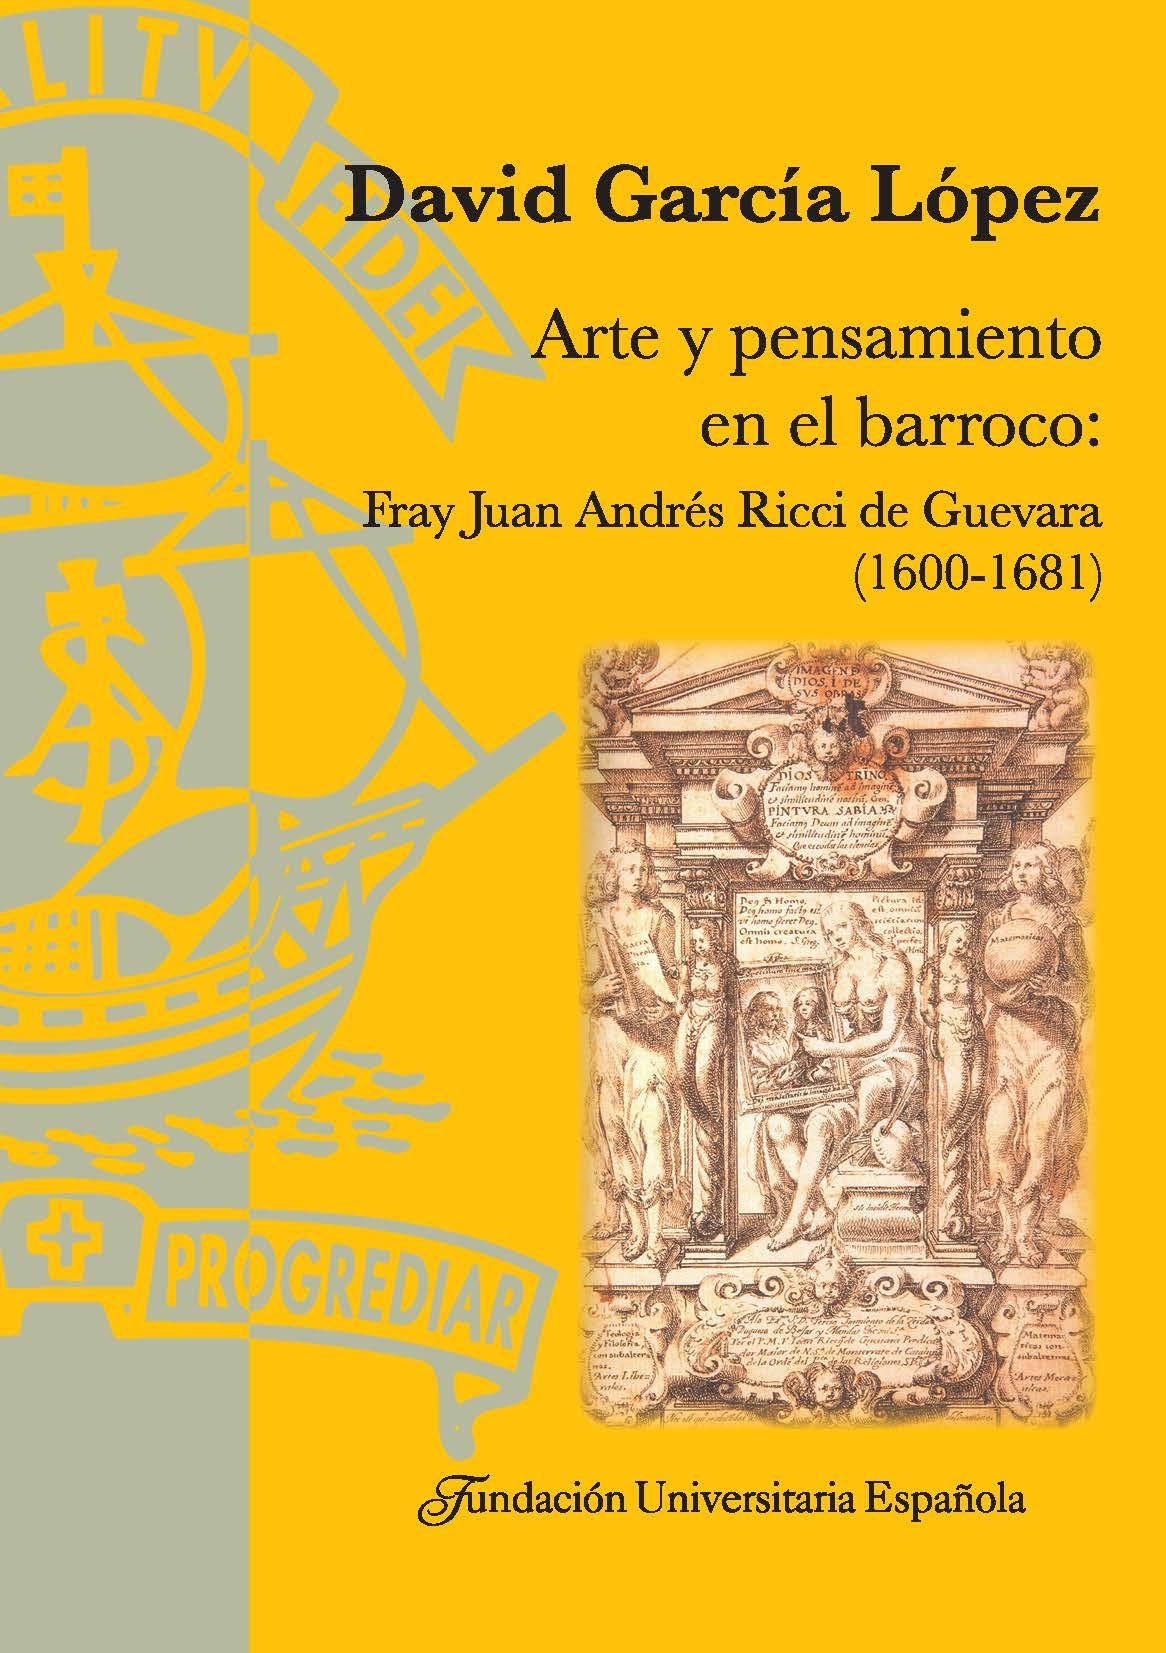 Arte y pensamiento en el barroco "fray Juan Andrés Ricci de Guevara (1600-1681)". 